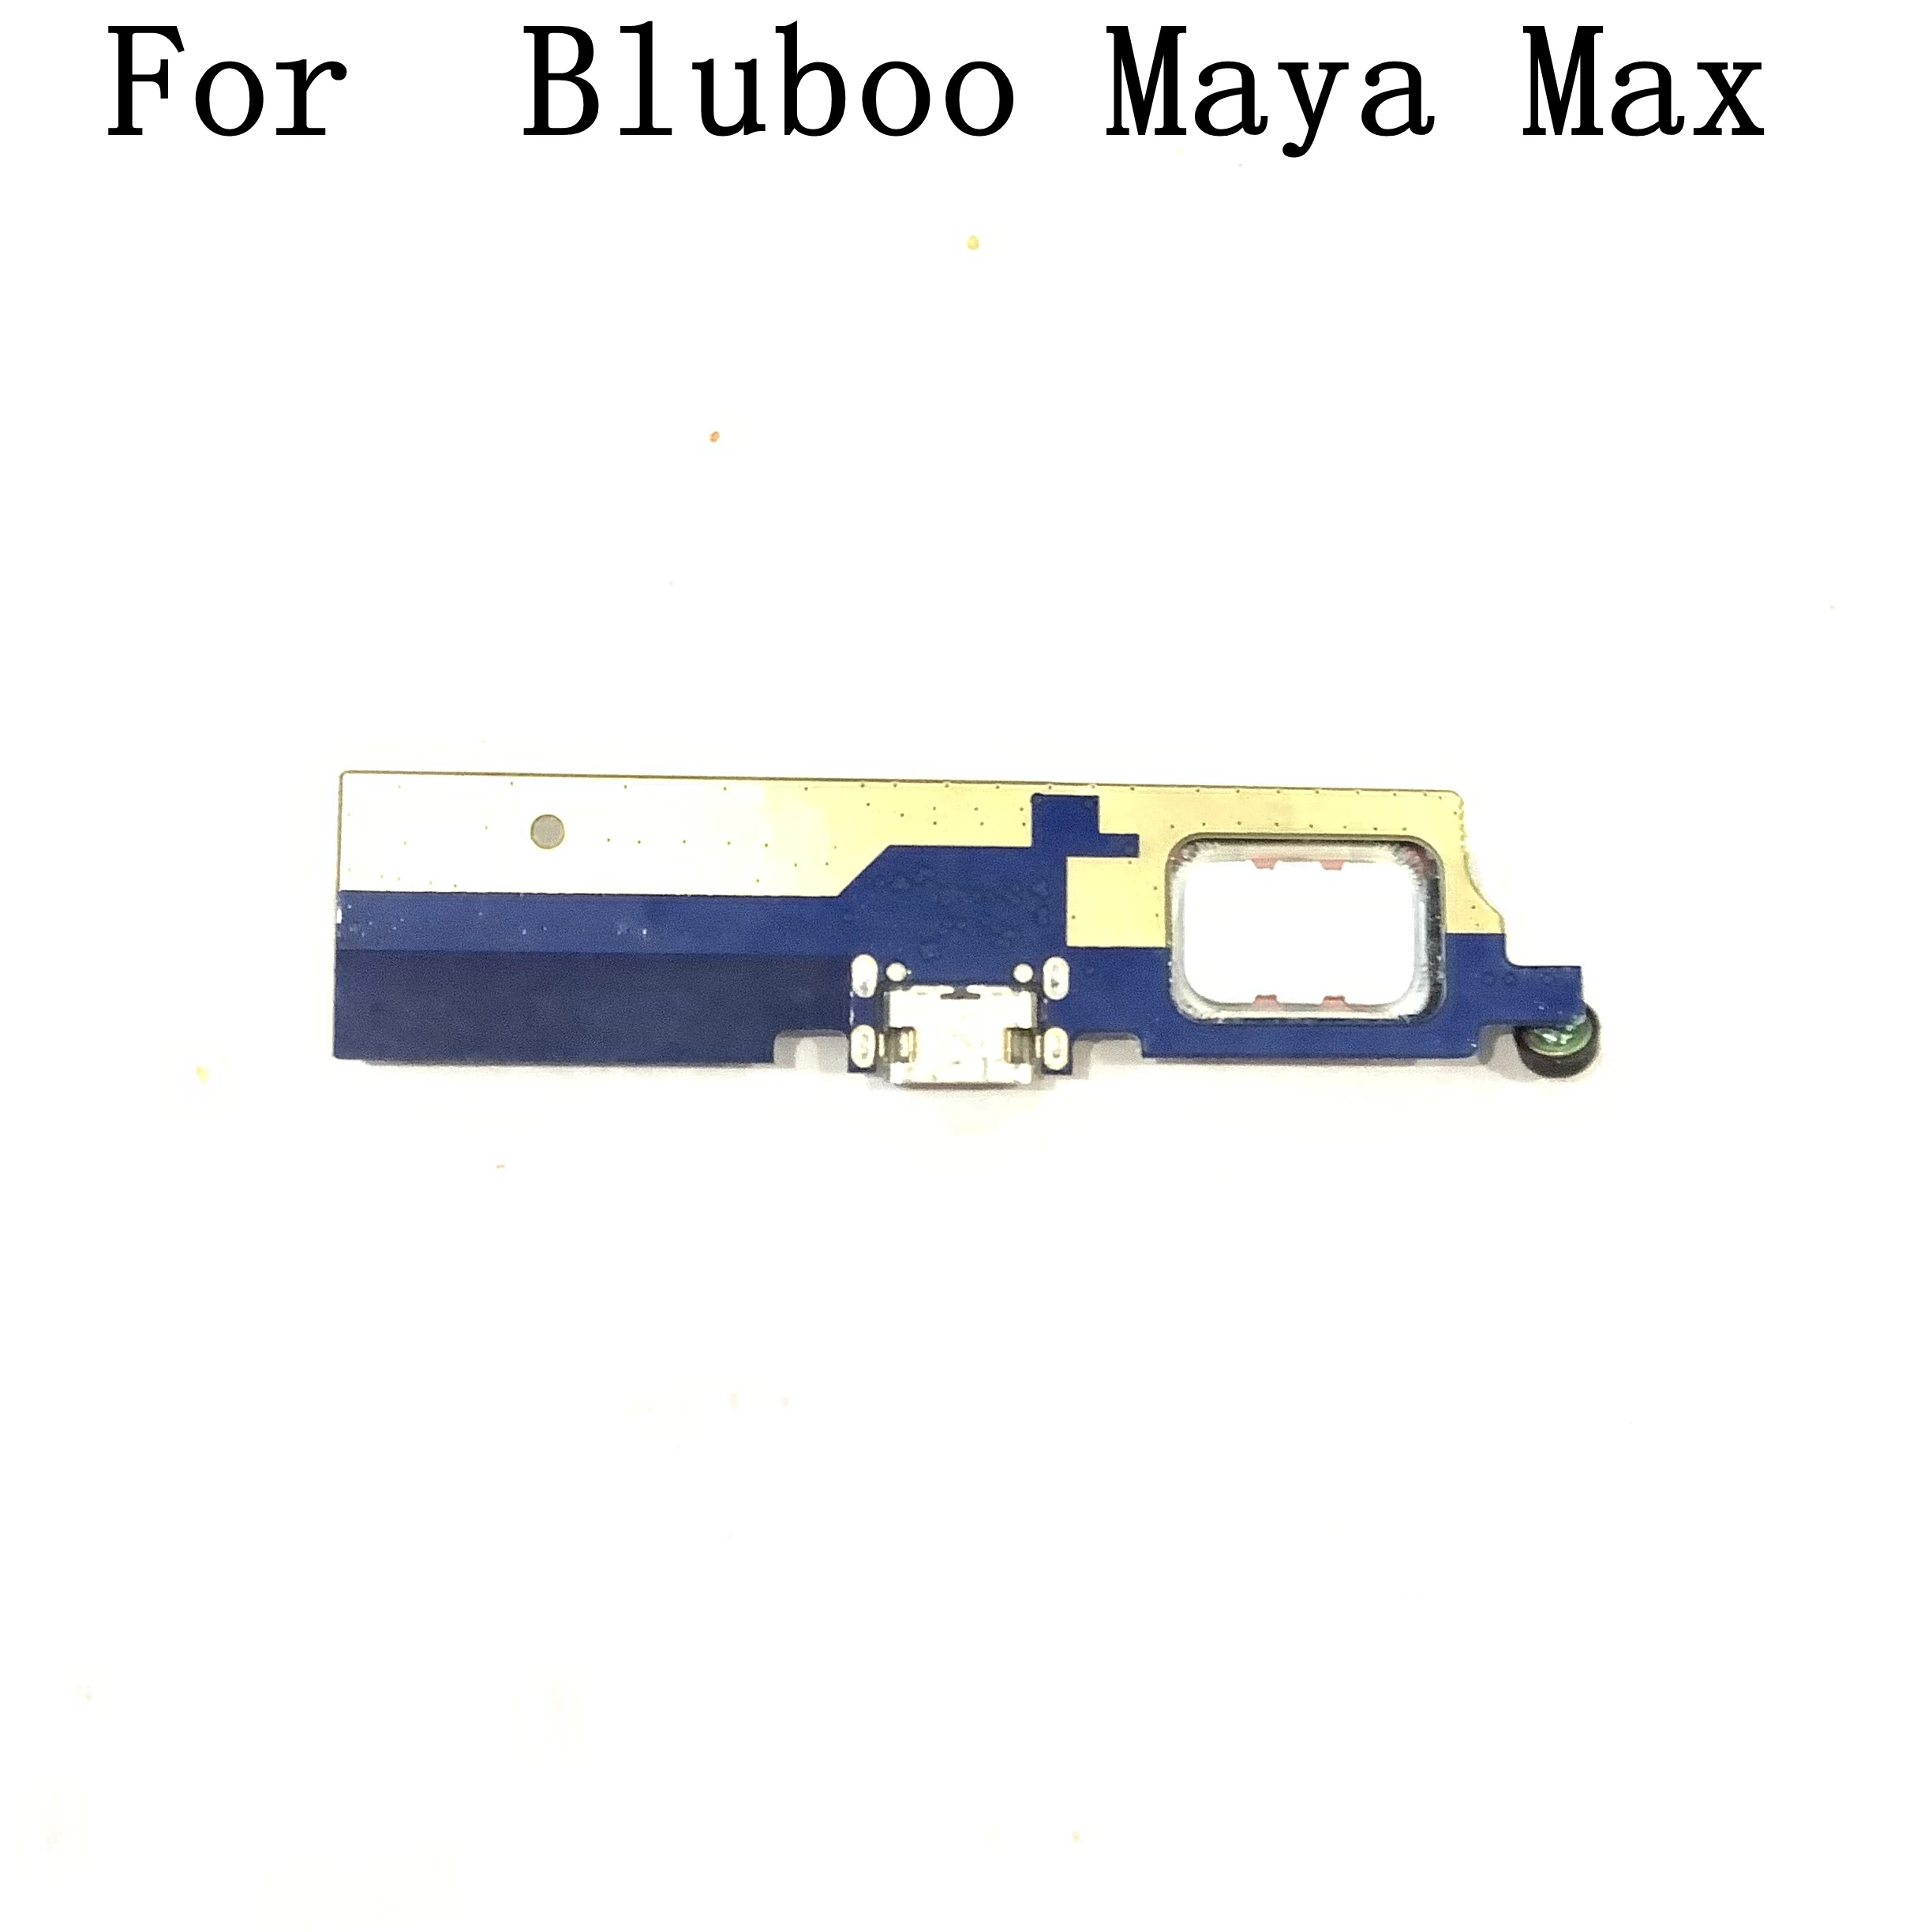 Naudoti Bluboo Maya, Max Valdybos + Vibracija Variklis + Garsiai Garsiakalbis Bluboo Maya, Max MTK6750 6.0